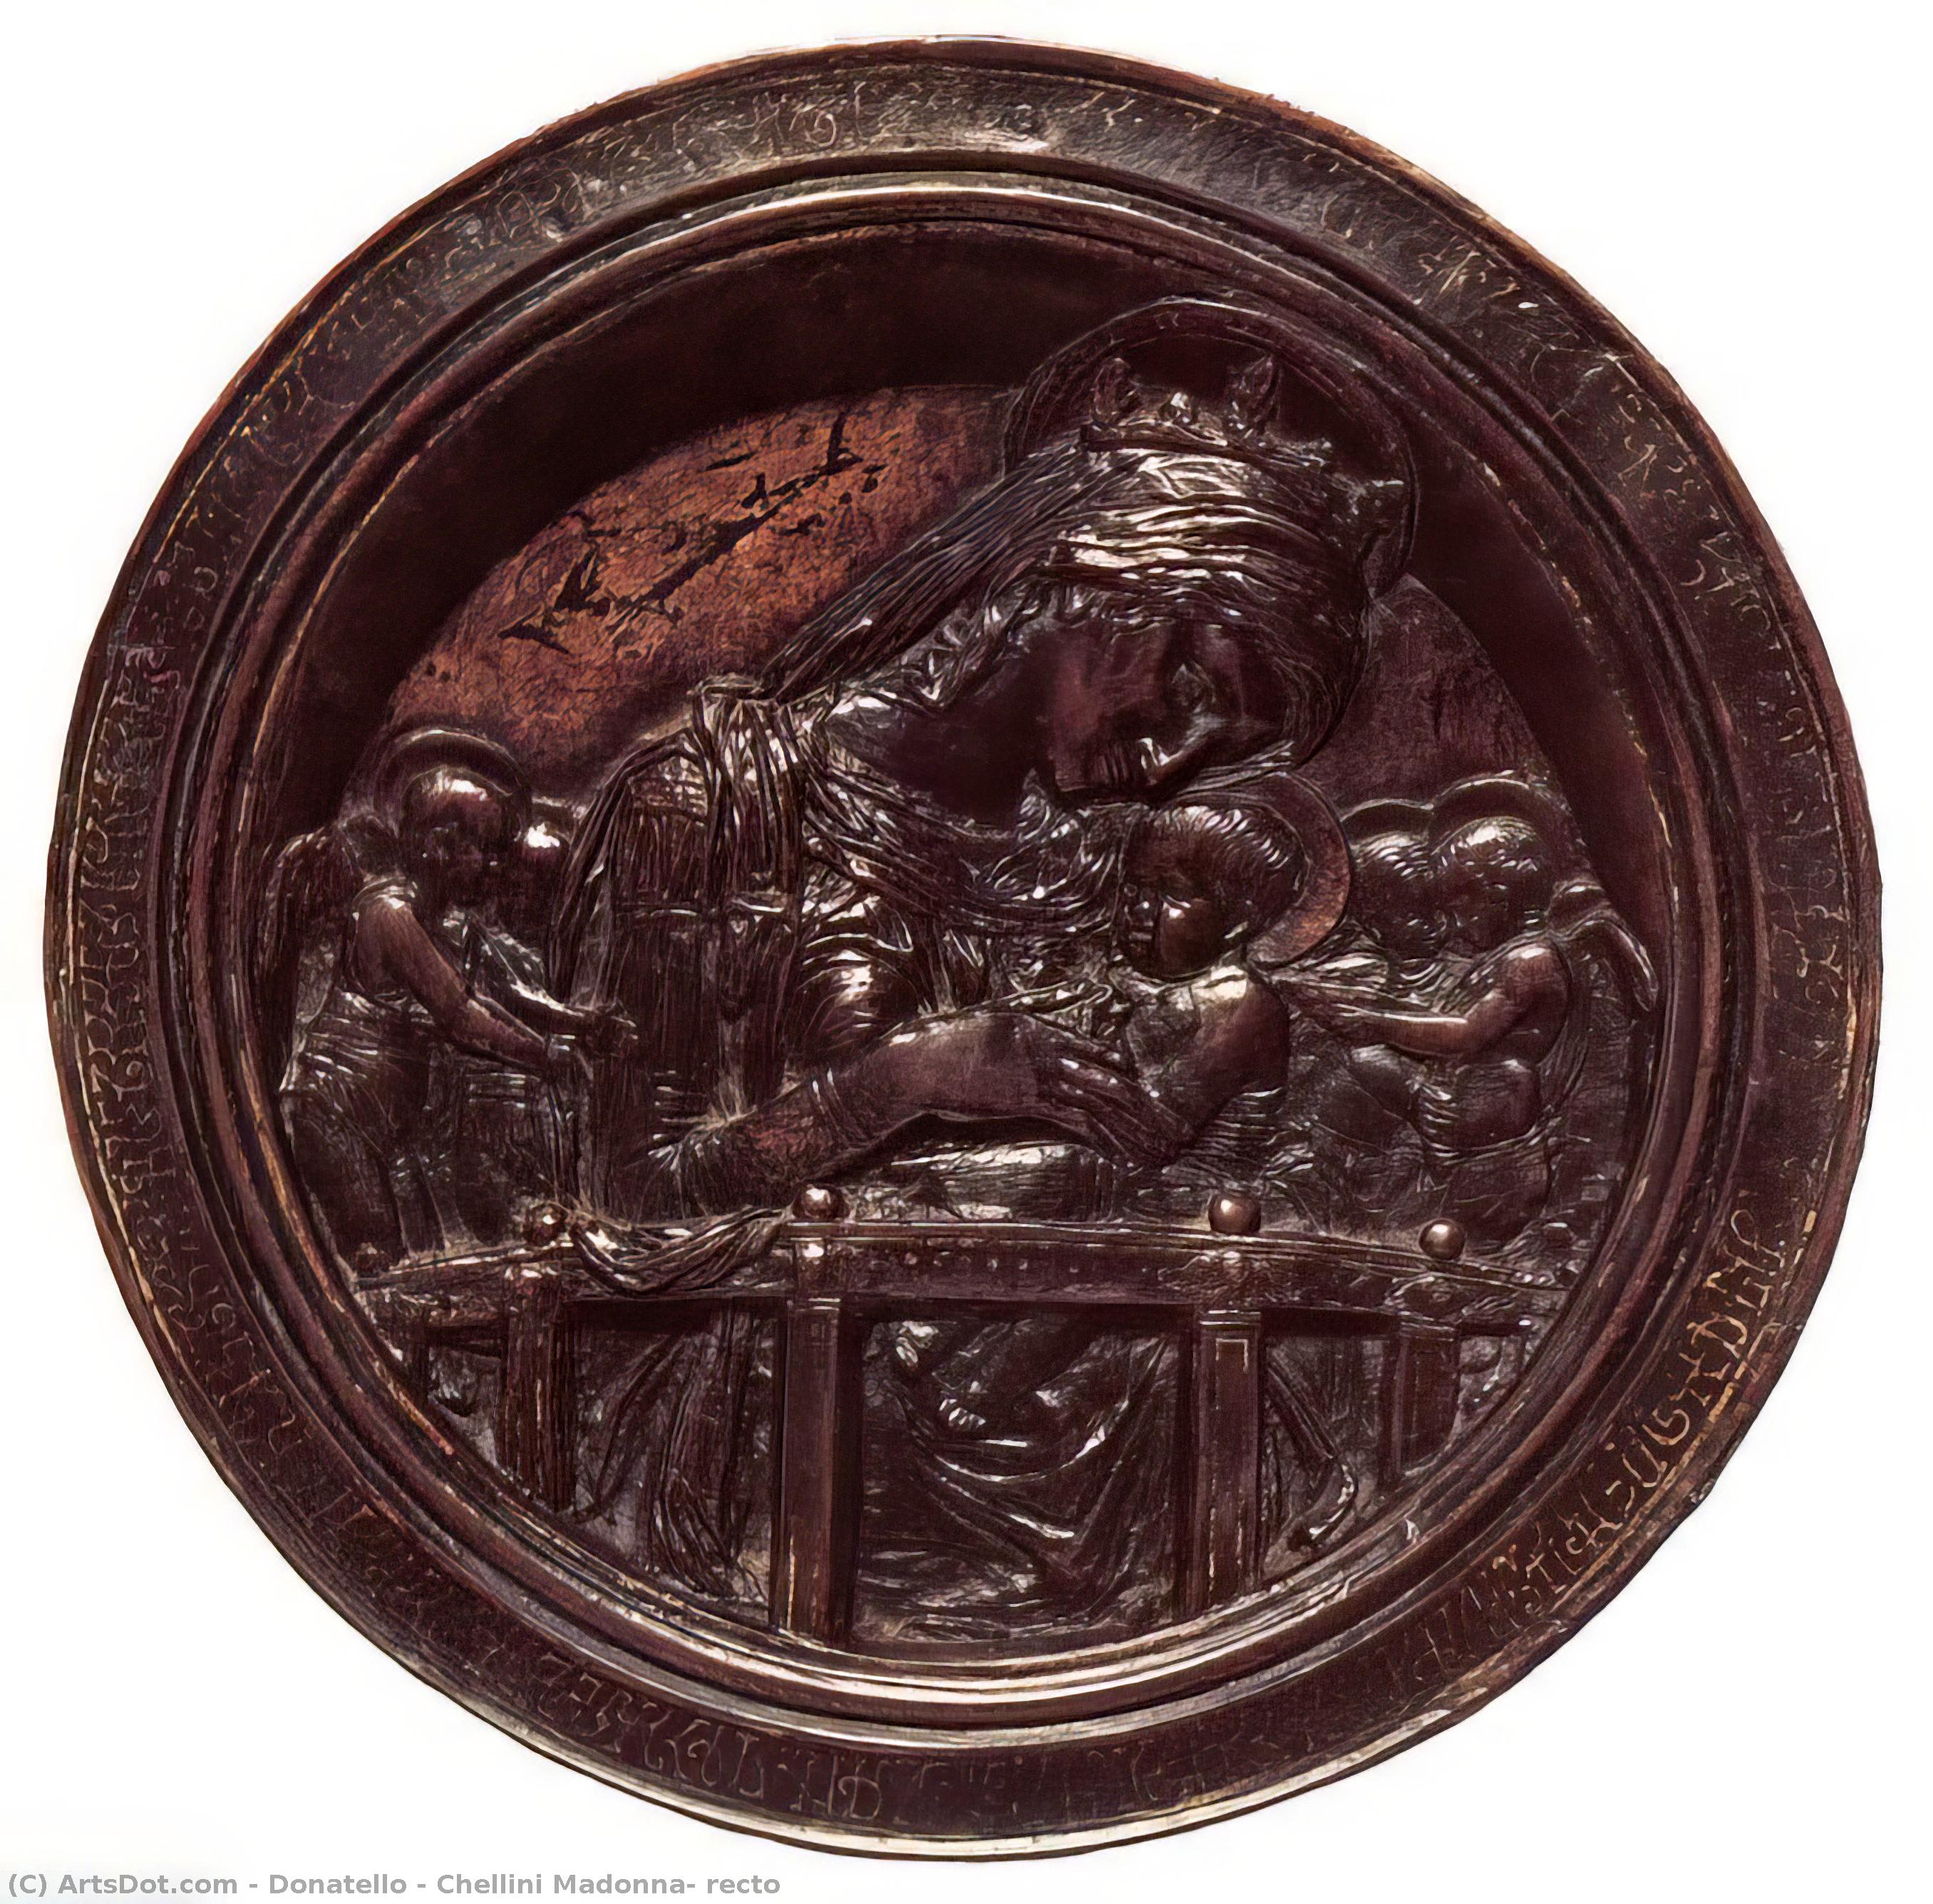 Получить Репродукции Произведений Искусства Челлини Мадонна, ректо по Donatello (1386-1466, Italy) | ArtsDot.com